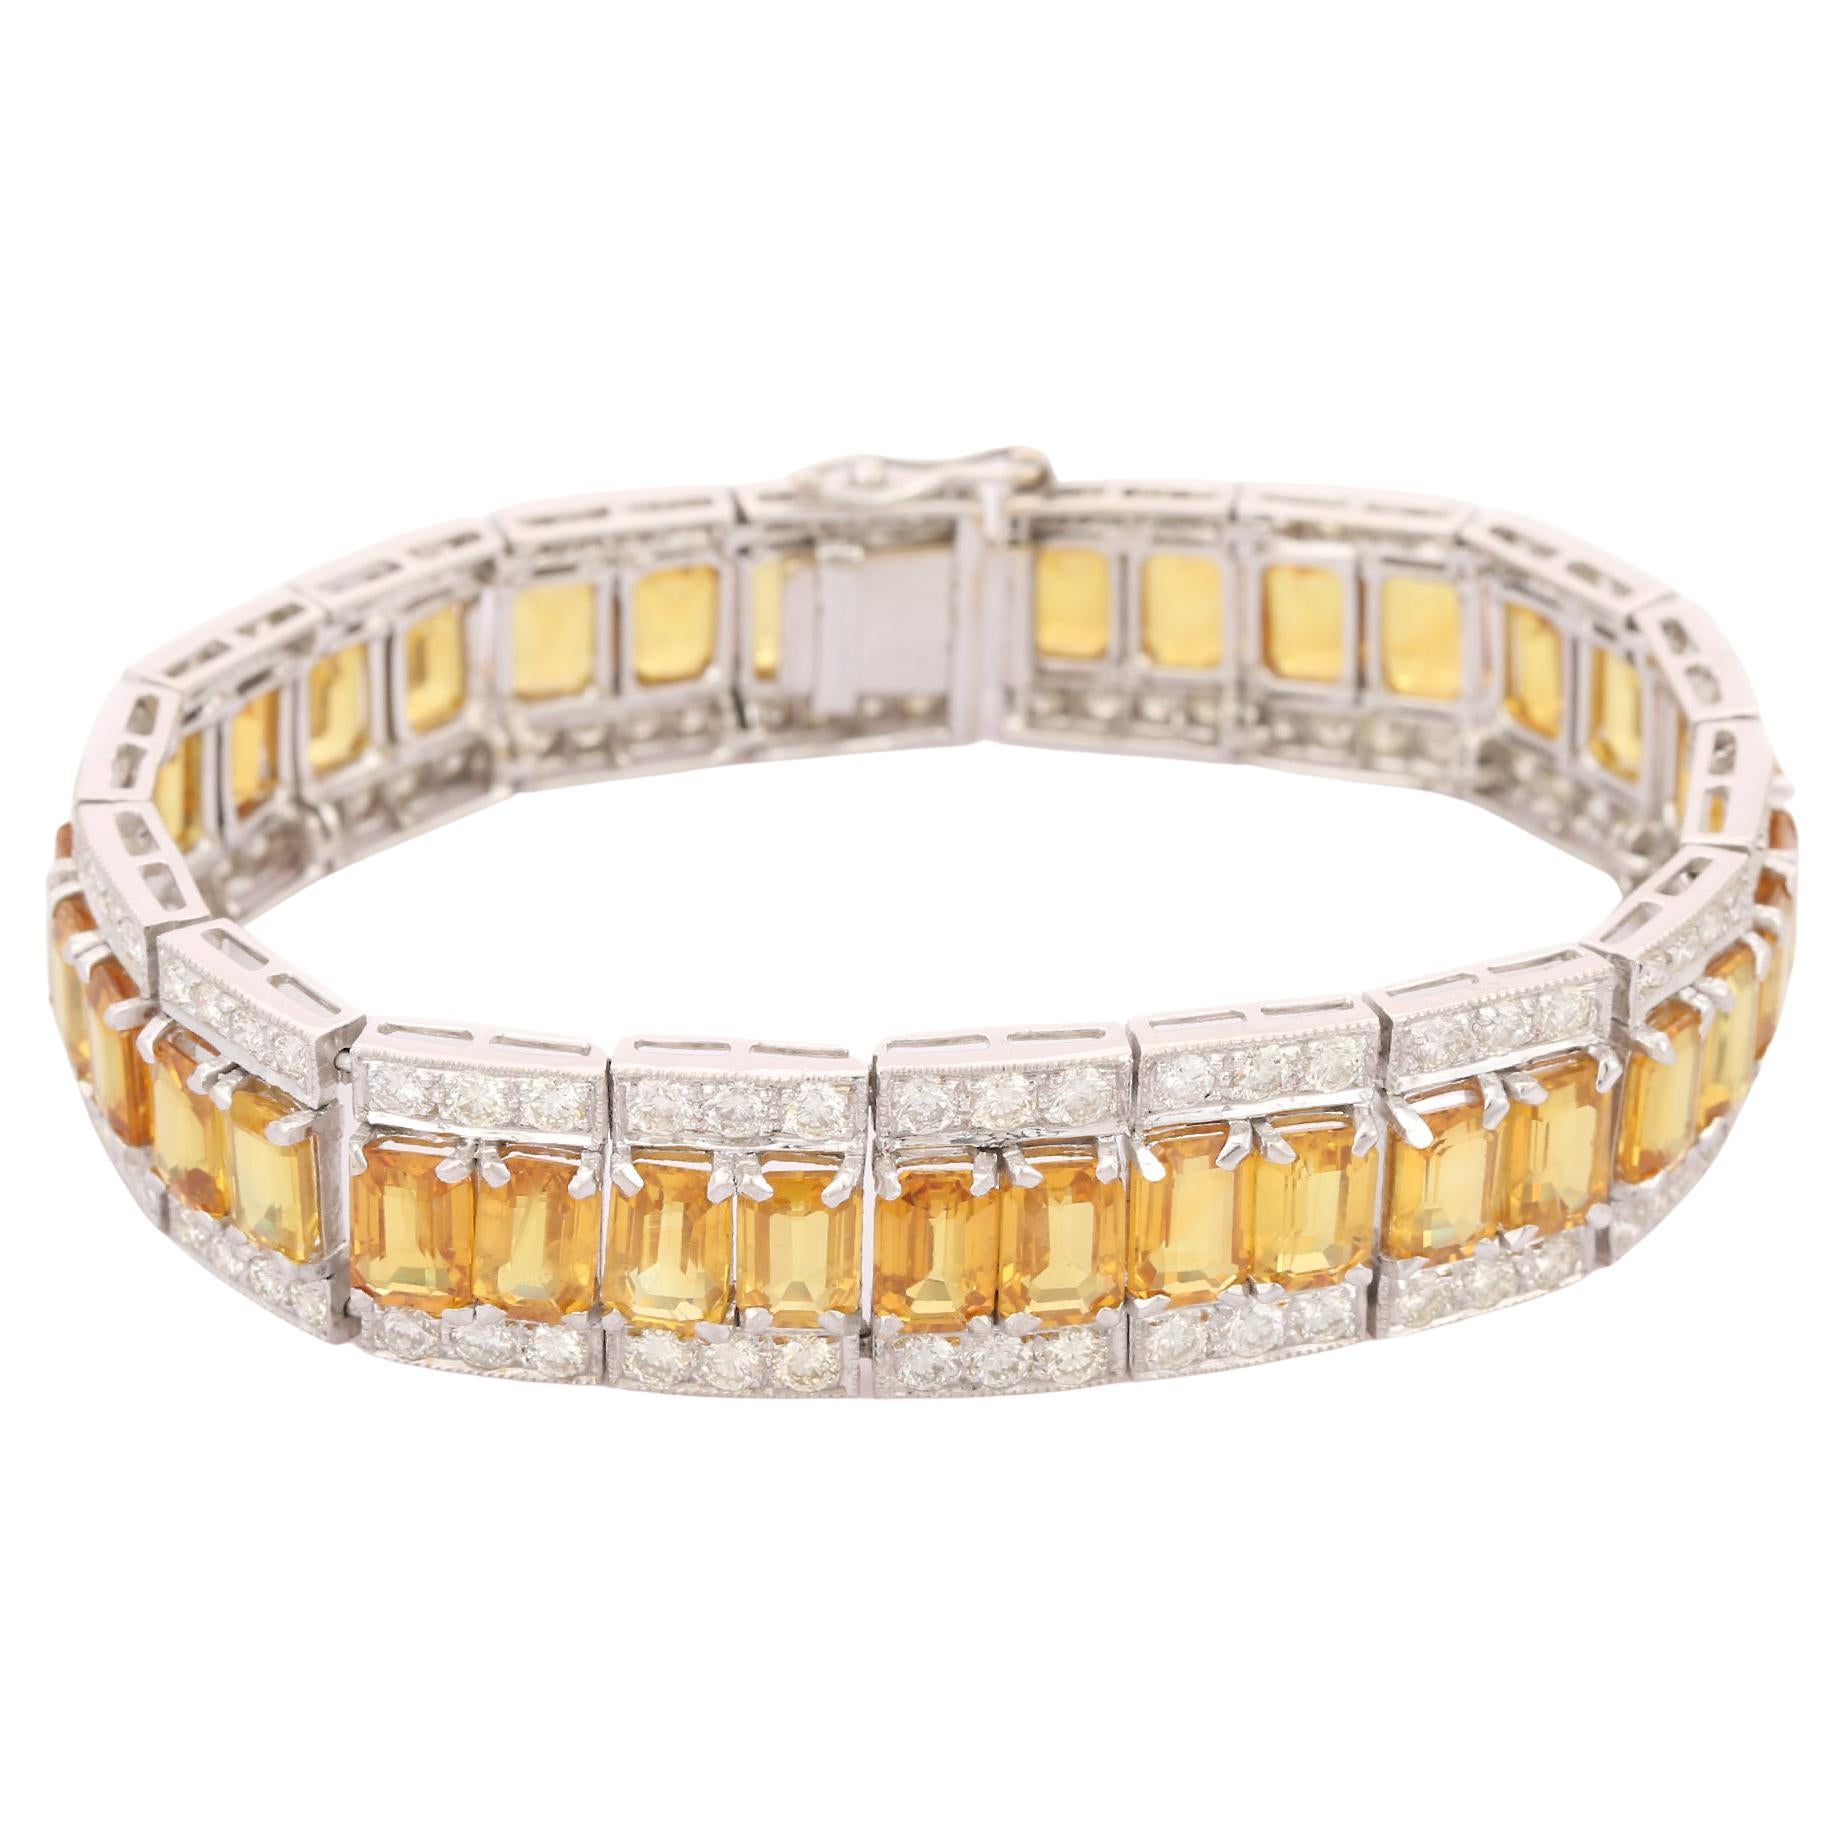 Ce bracelet de tennis en saphir jaune et diamant en or 18 carats met en valeur 36 saphirs jaunes naturels étincelants à l'infini, pesant 37,87 carats et 144 pièces de diamants pesant 5,34 carats. Il mesure 7 pouces de long. 
Le saphir stimule la